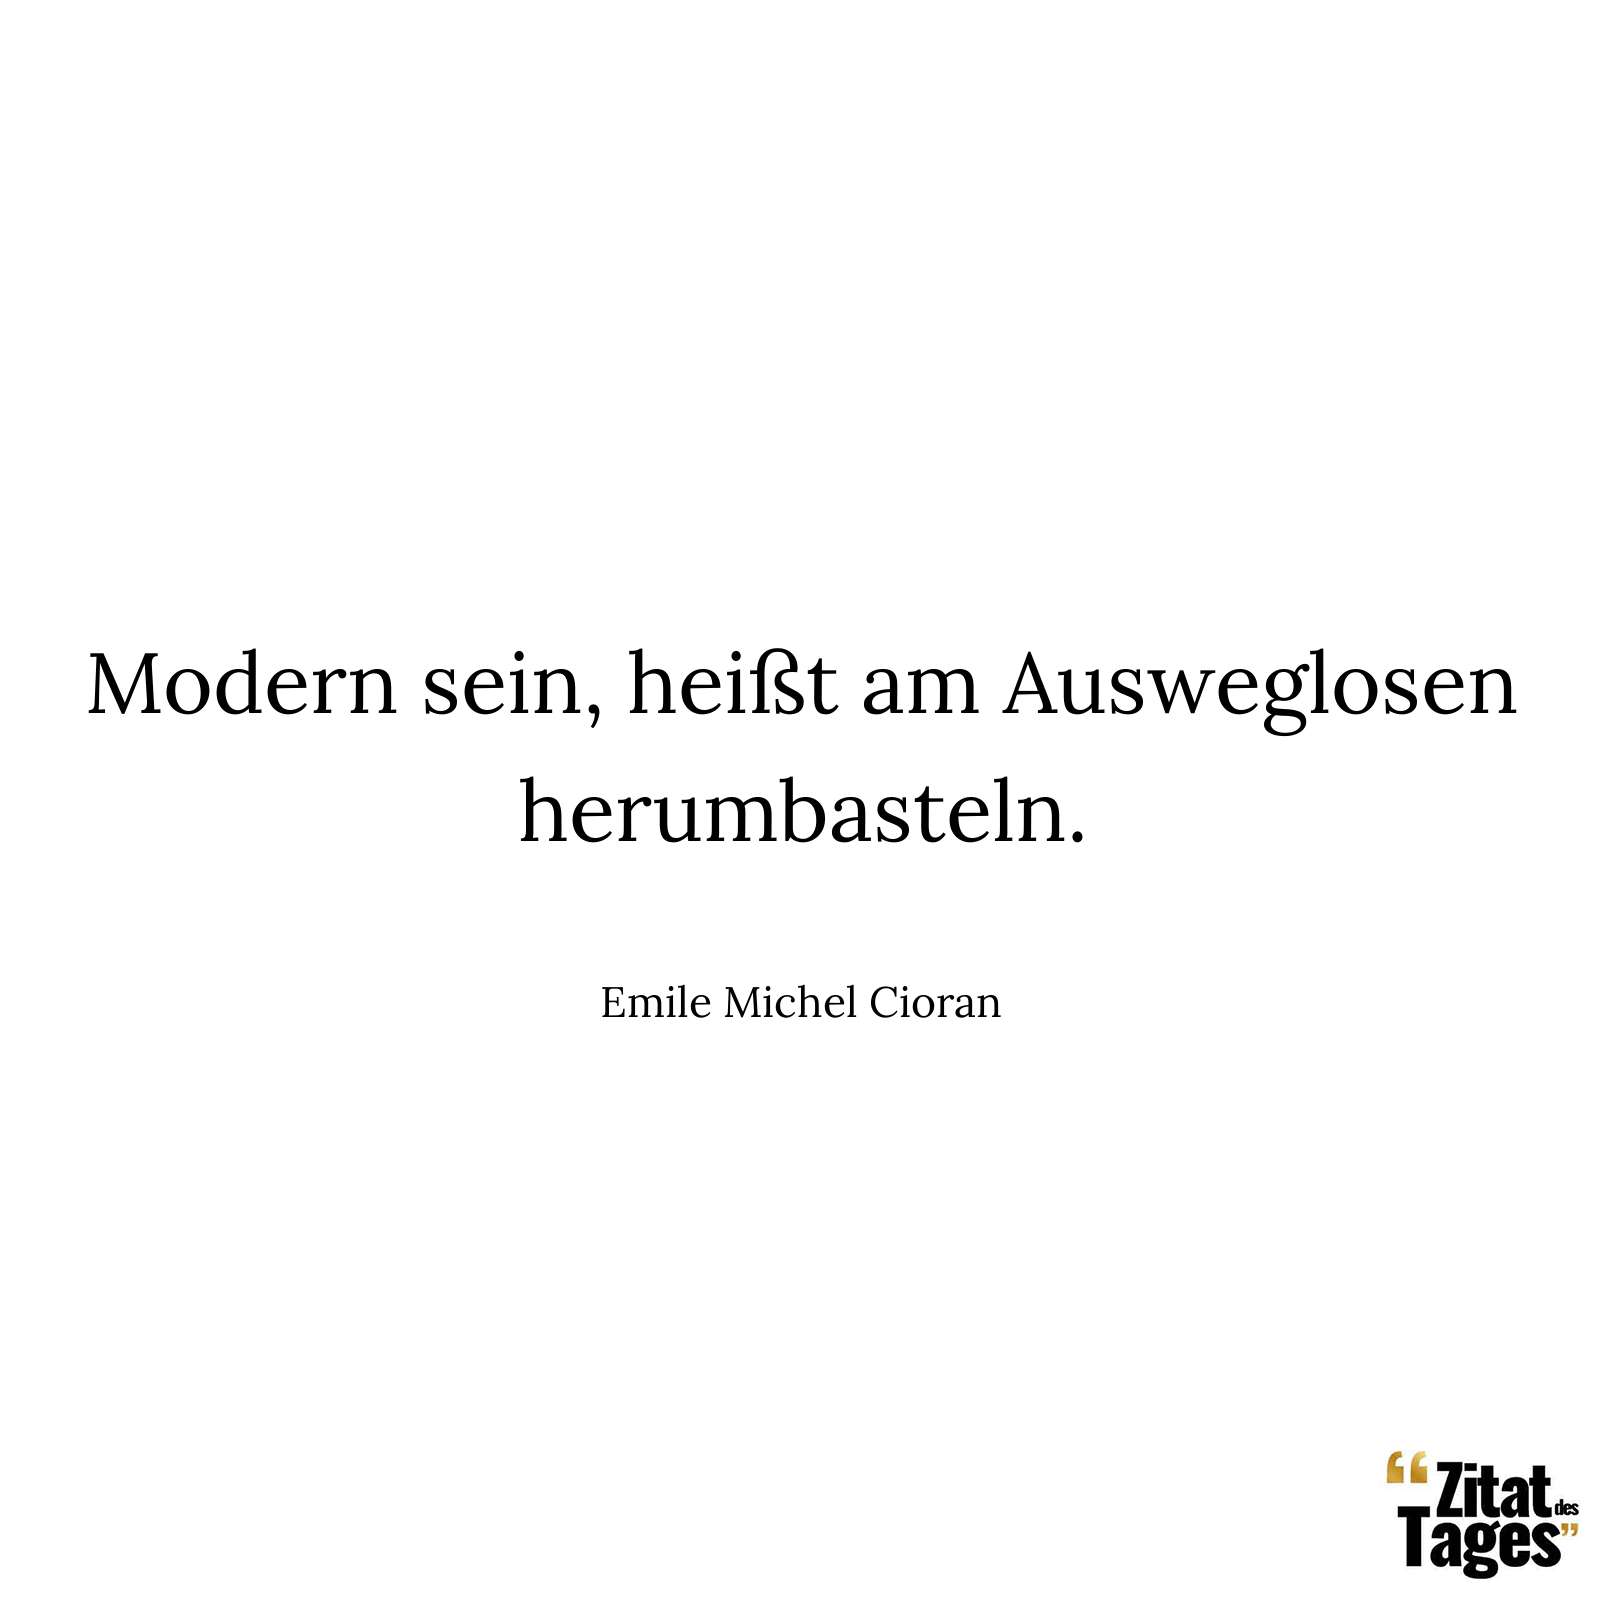 Modern sein, heißt am Ausweglosen herumbasteln. - Emile Michel Cioran